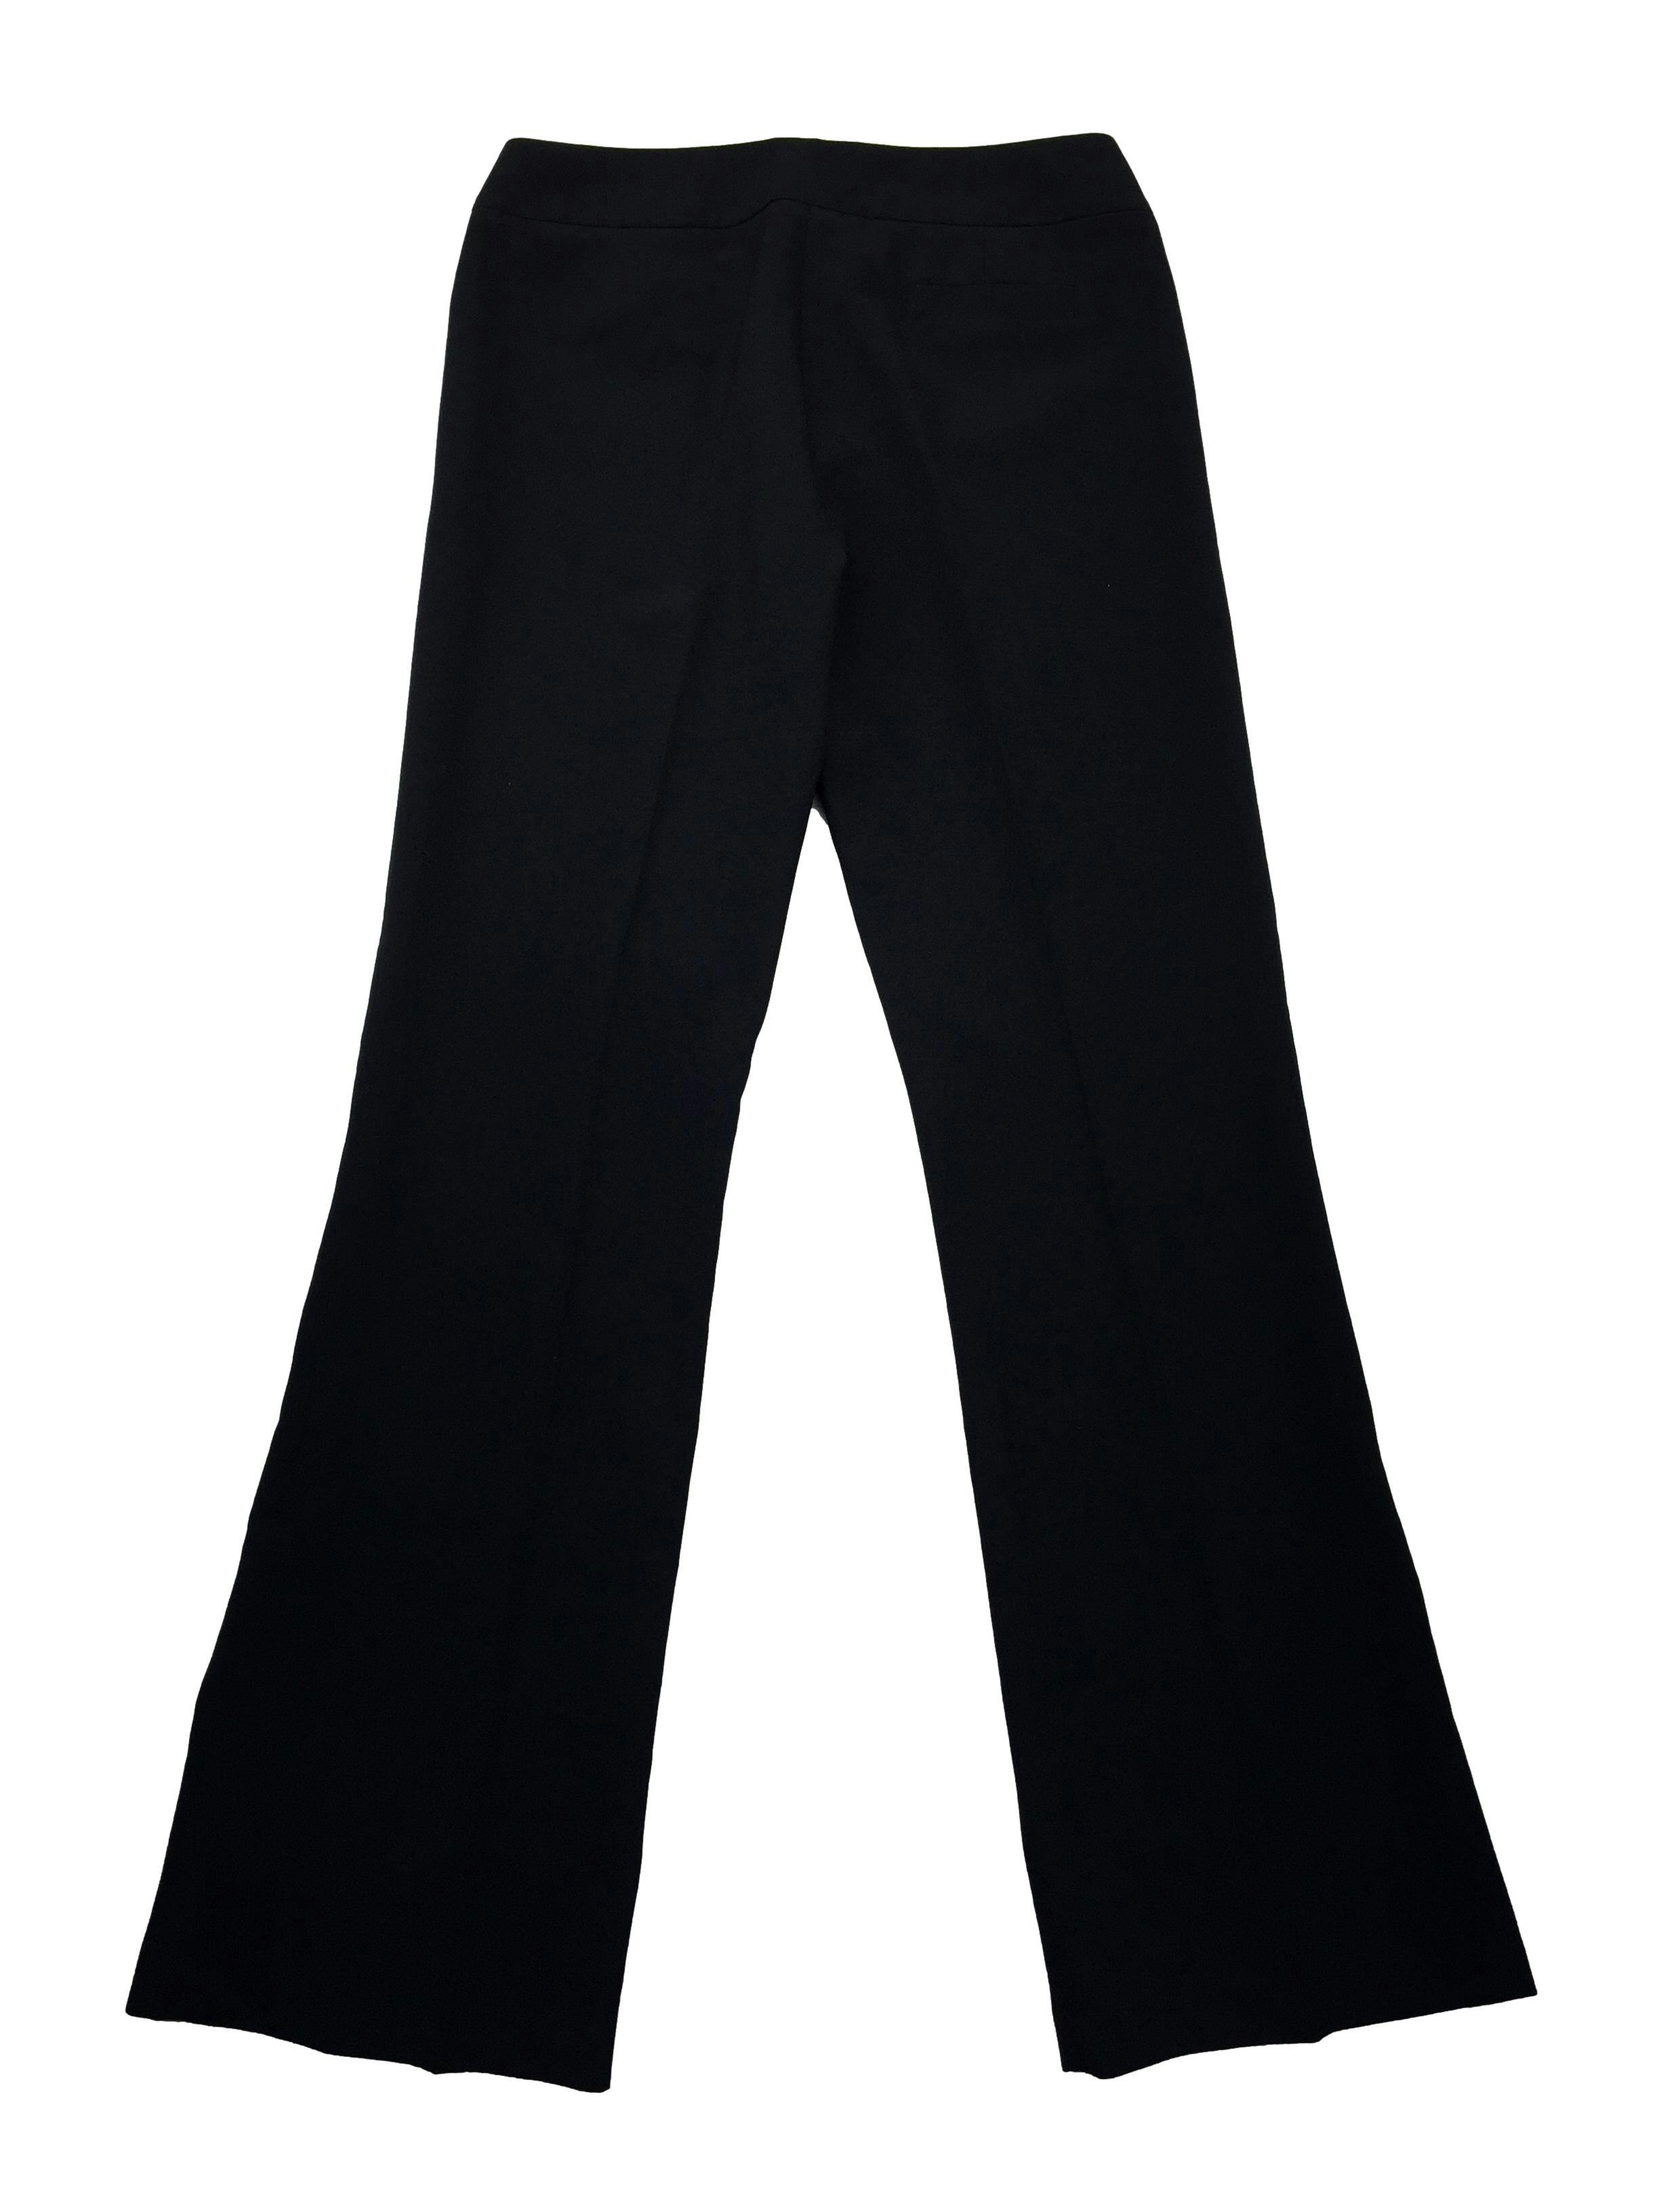 Pantalón Basement sastre negro, botones y cierre. Cintura: 78cm, Tiro: 22cm, Largo: 107cm